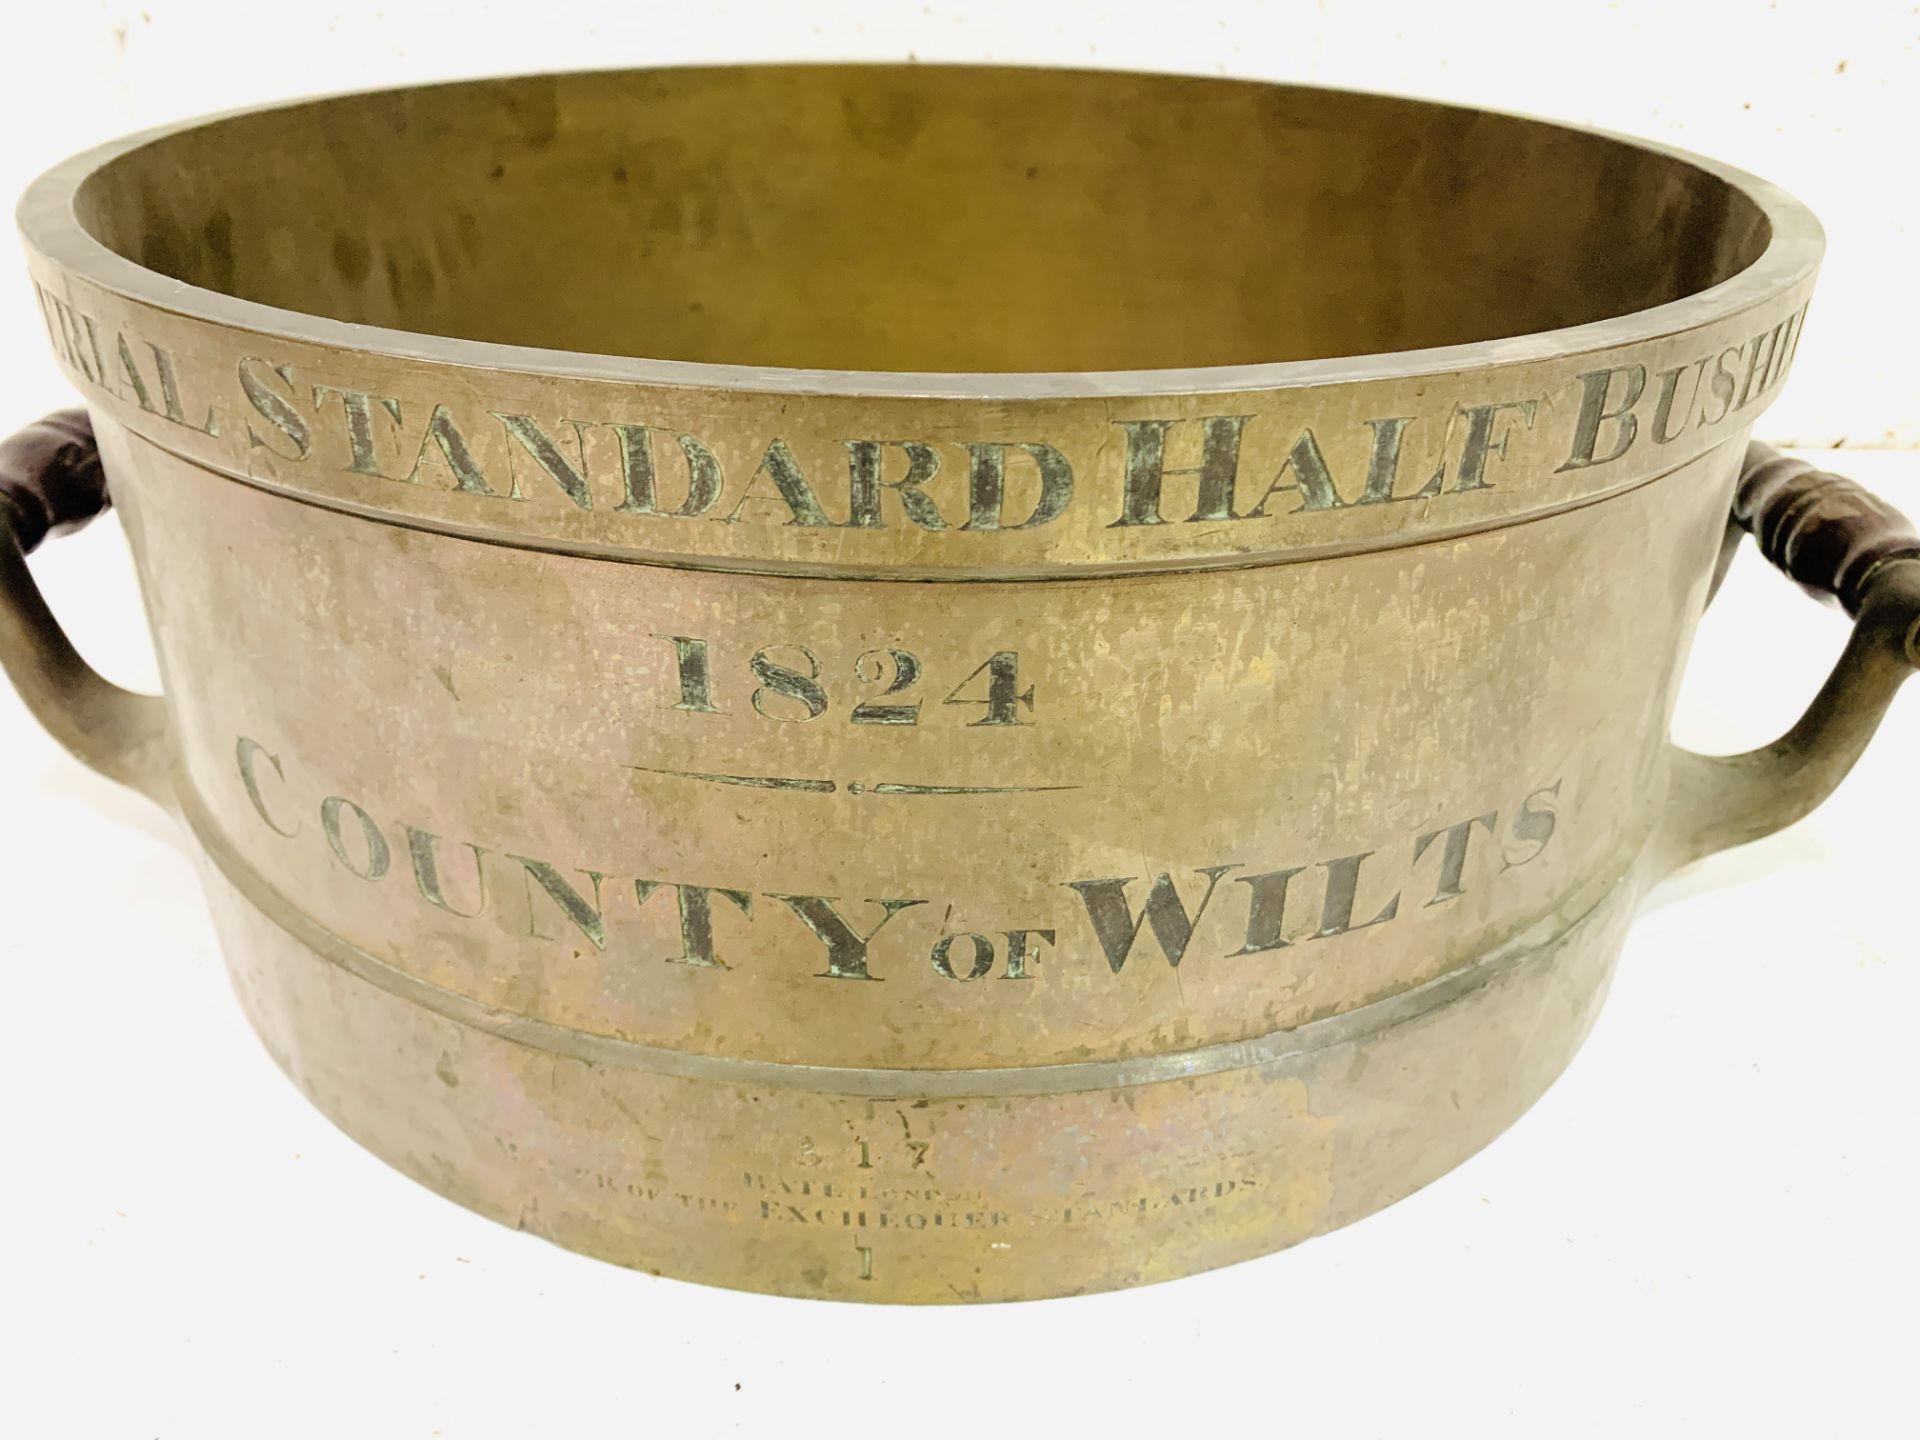 Bronze Imperial Standard Half Bushel measure, 1824, by Bate - Image 3 of 5